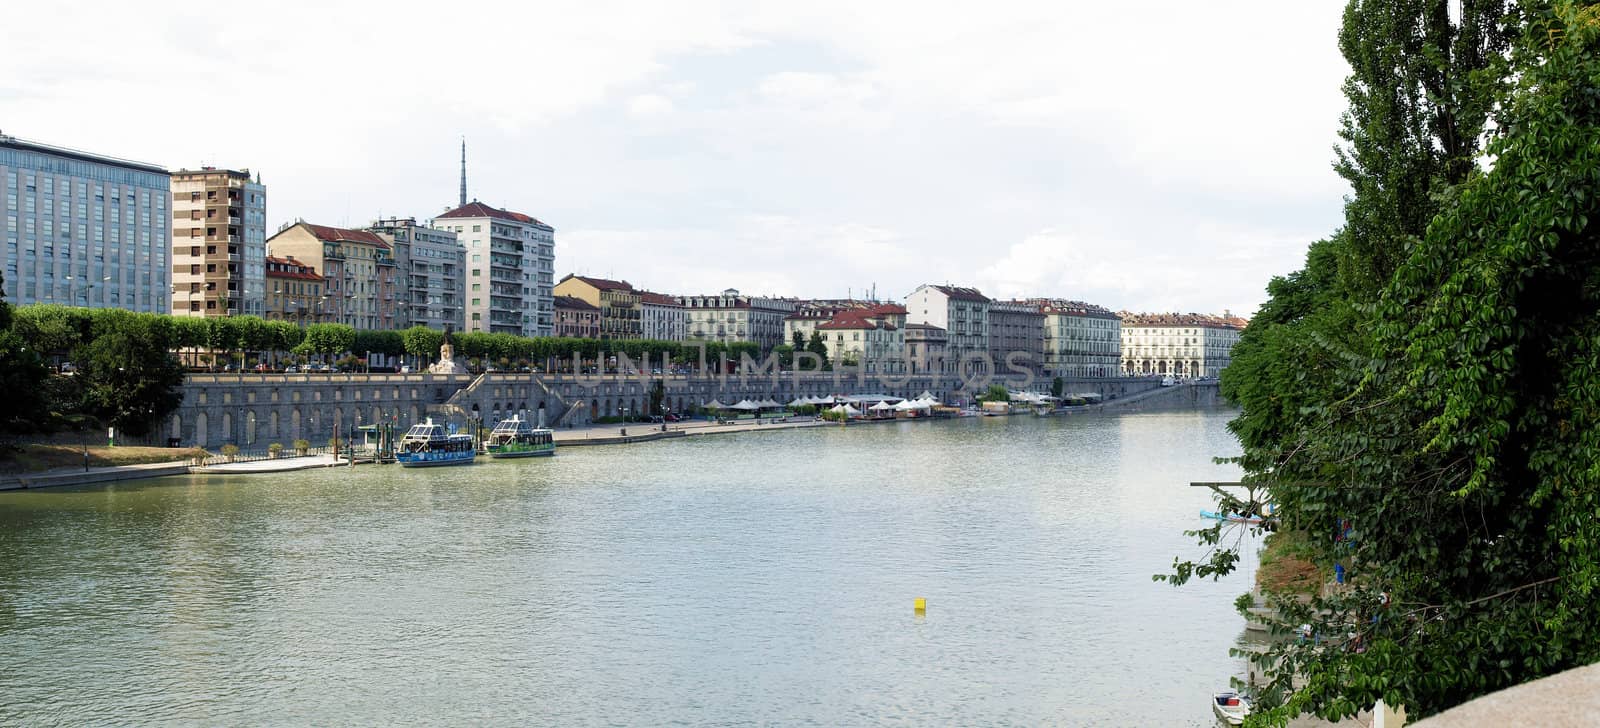 River Po, Turin by claudiodivizia